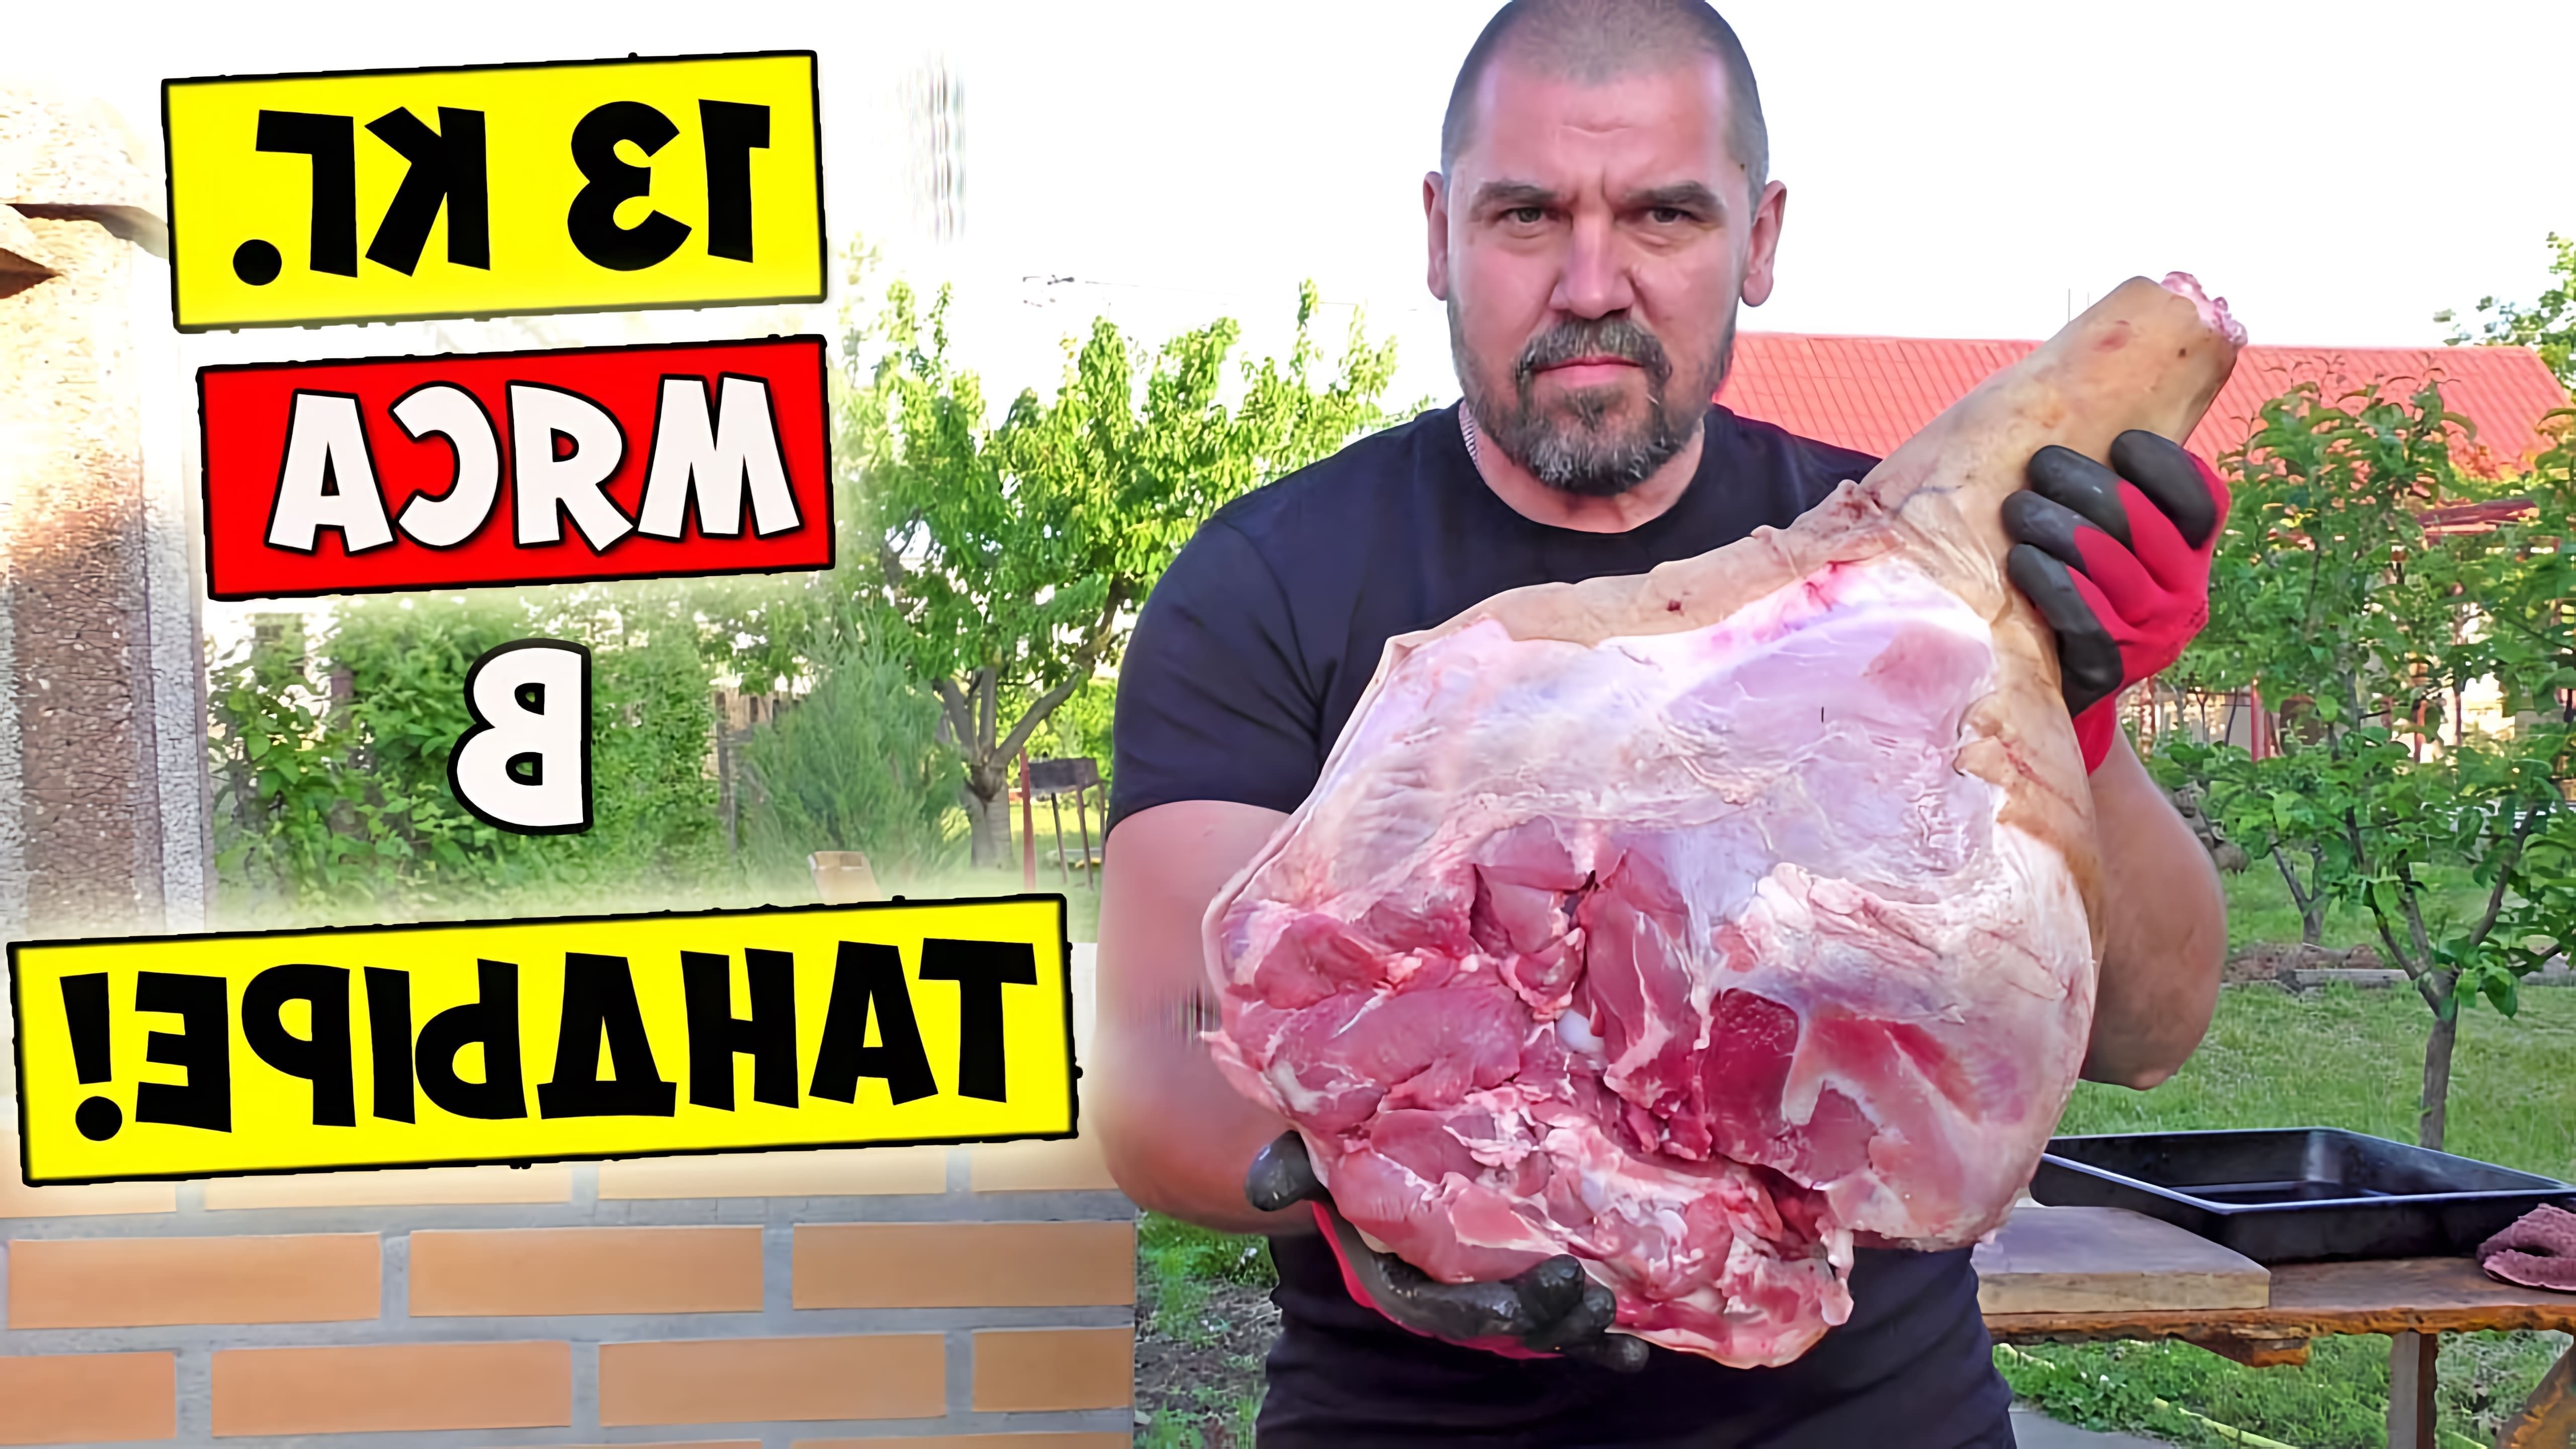 В этом видео демонстрируется процесс приготовления большого куска мяса весом 13 кг в тандыре